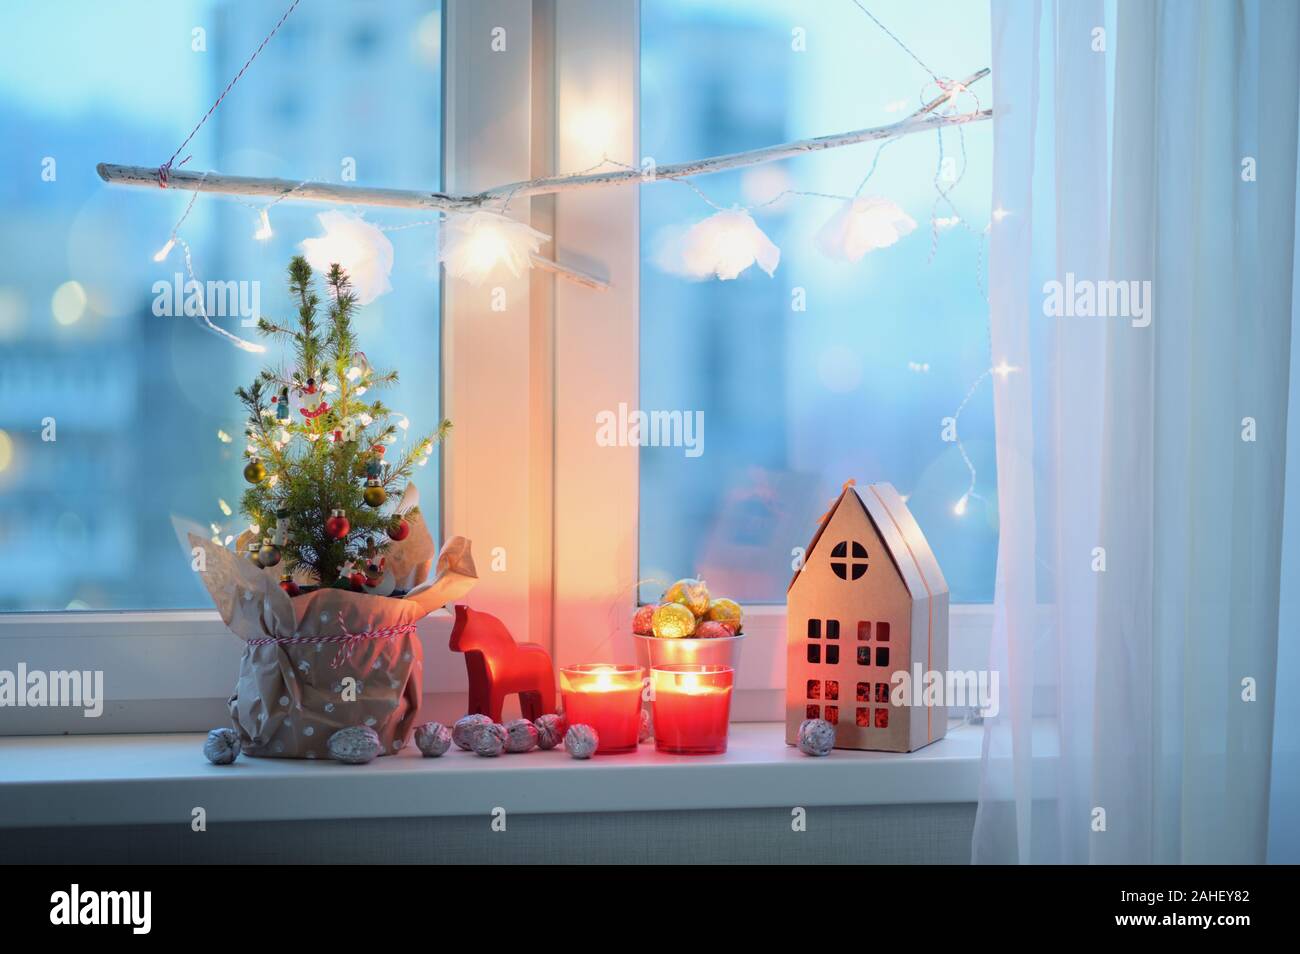 Árbol de Navidad, Adornos de Navidad, velas y el regalo de Navidad en un alféizar Foto de stock